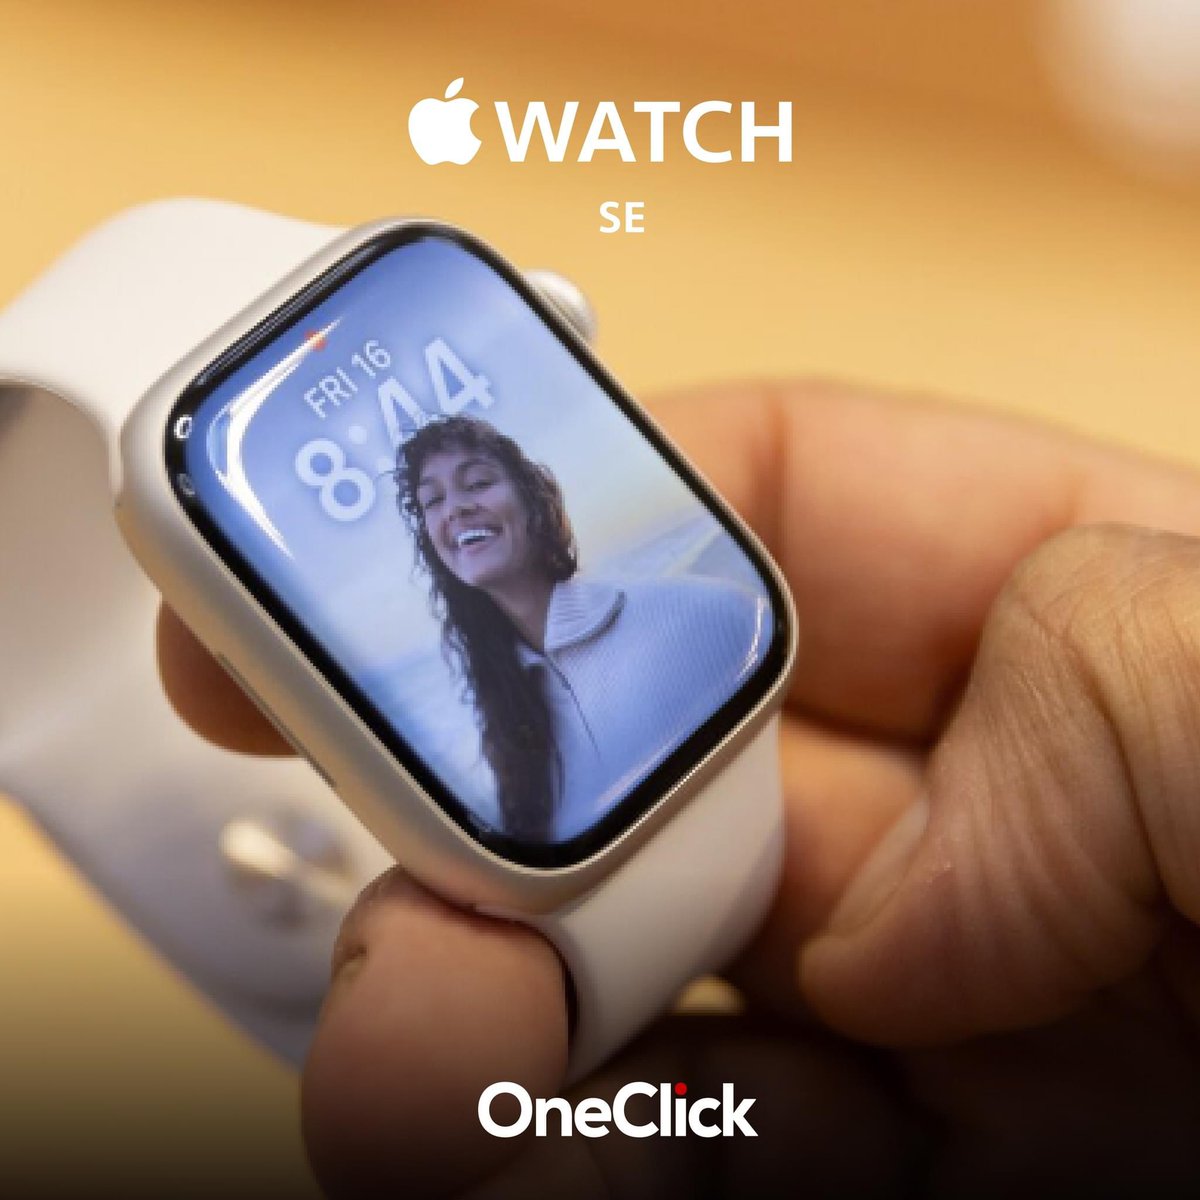 Con el Apple Watch SE te mantendrás al día con tu estilo de vida activo, este reloj inteligente te ayuda a estar conectado, motivado y en control. Disponible en #OneClickRD, #NivelKennedy